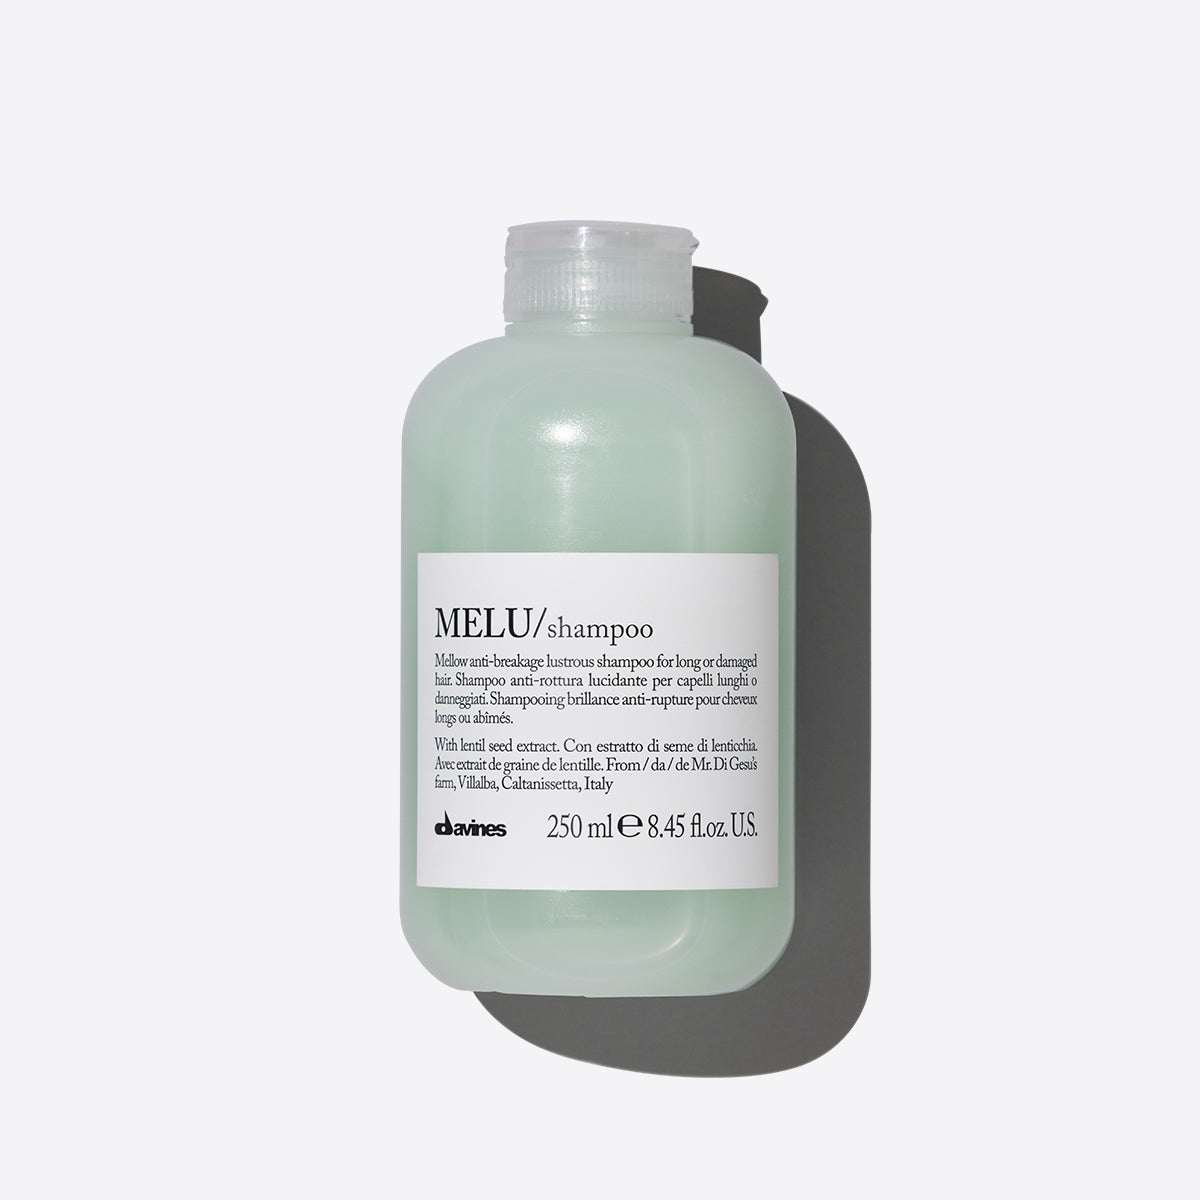 MELU Shampoo 1  75 mlDavines
